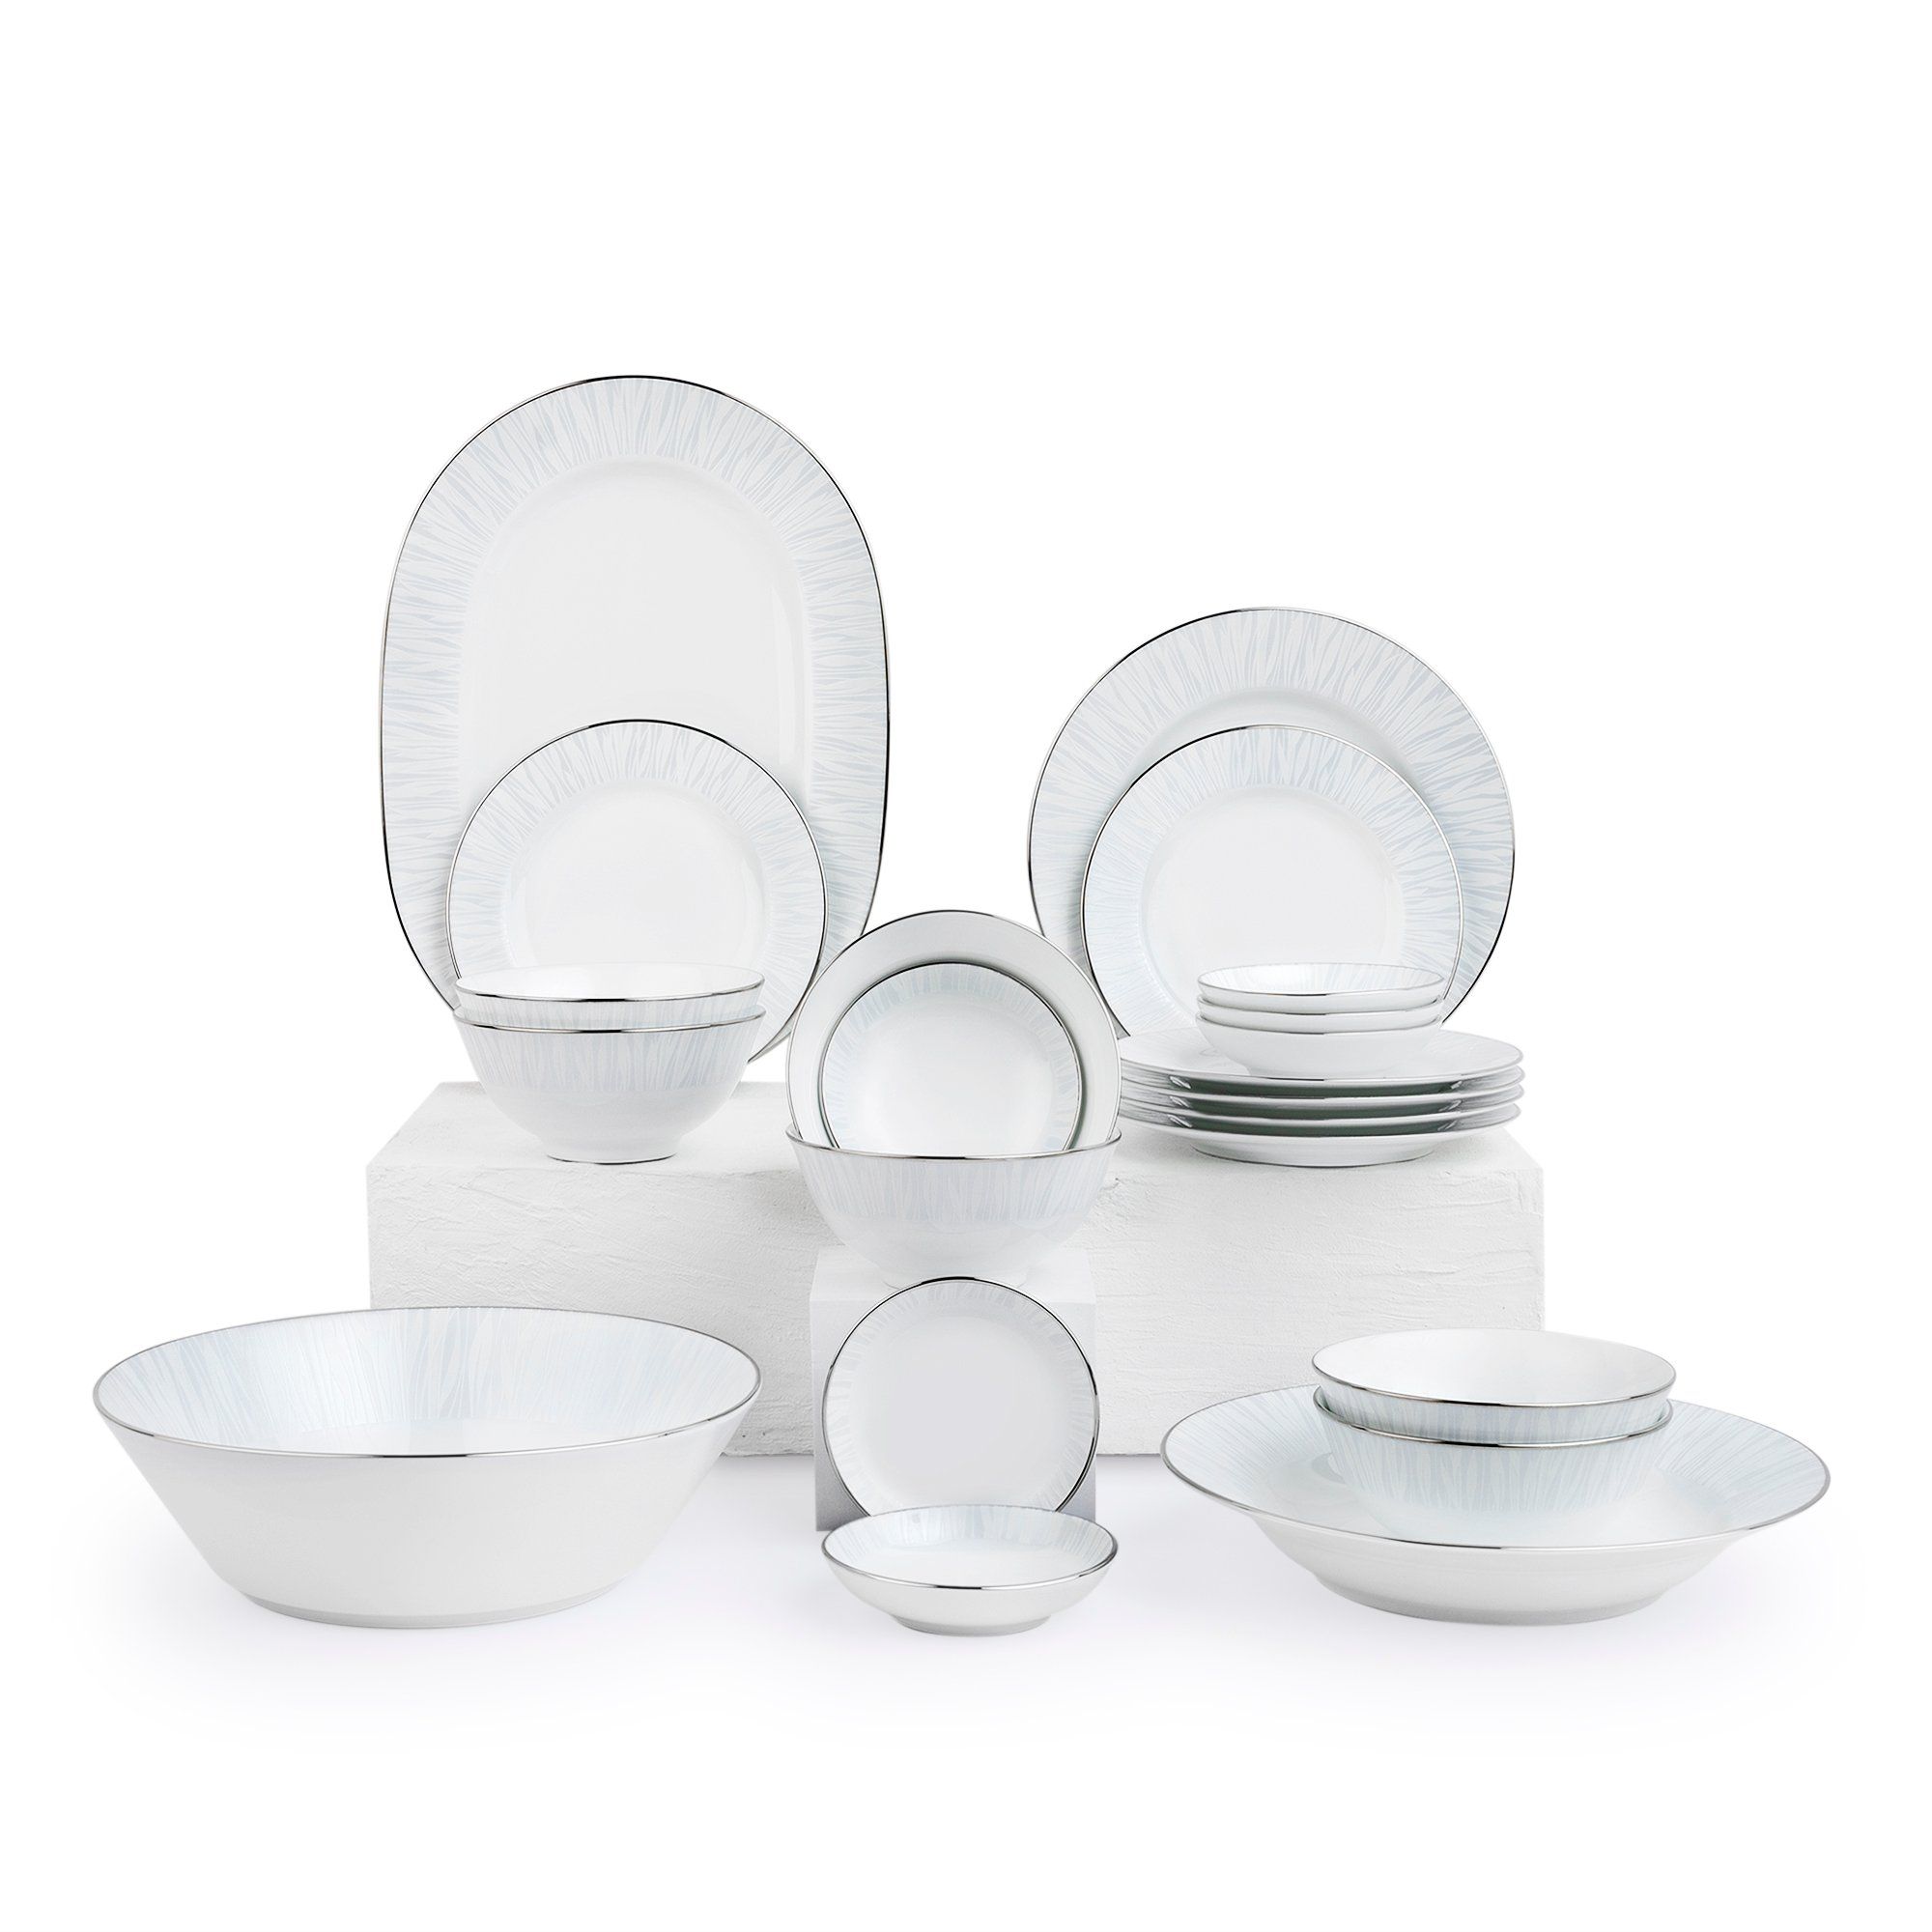  Bộ bát đĩa ăn Châu Á cơ bản 22 món sứ trắng | Glacier Platinum 1702 